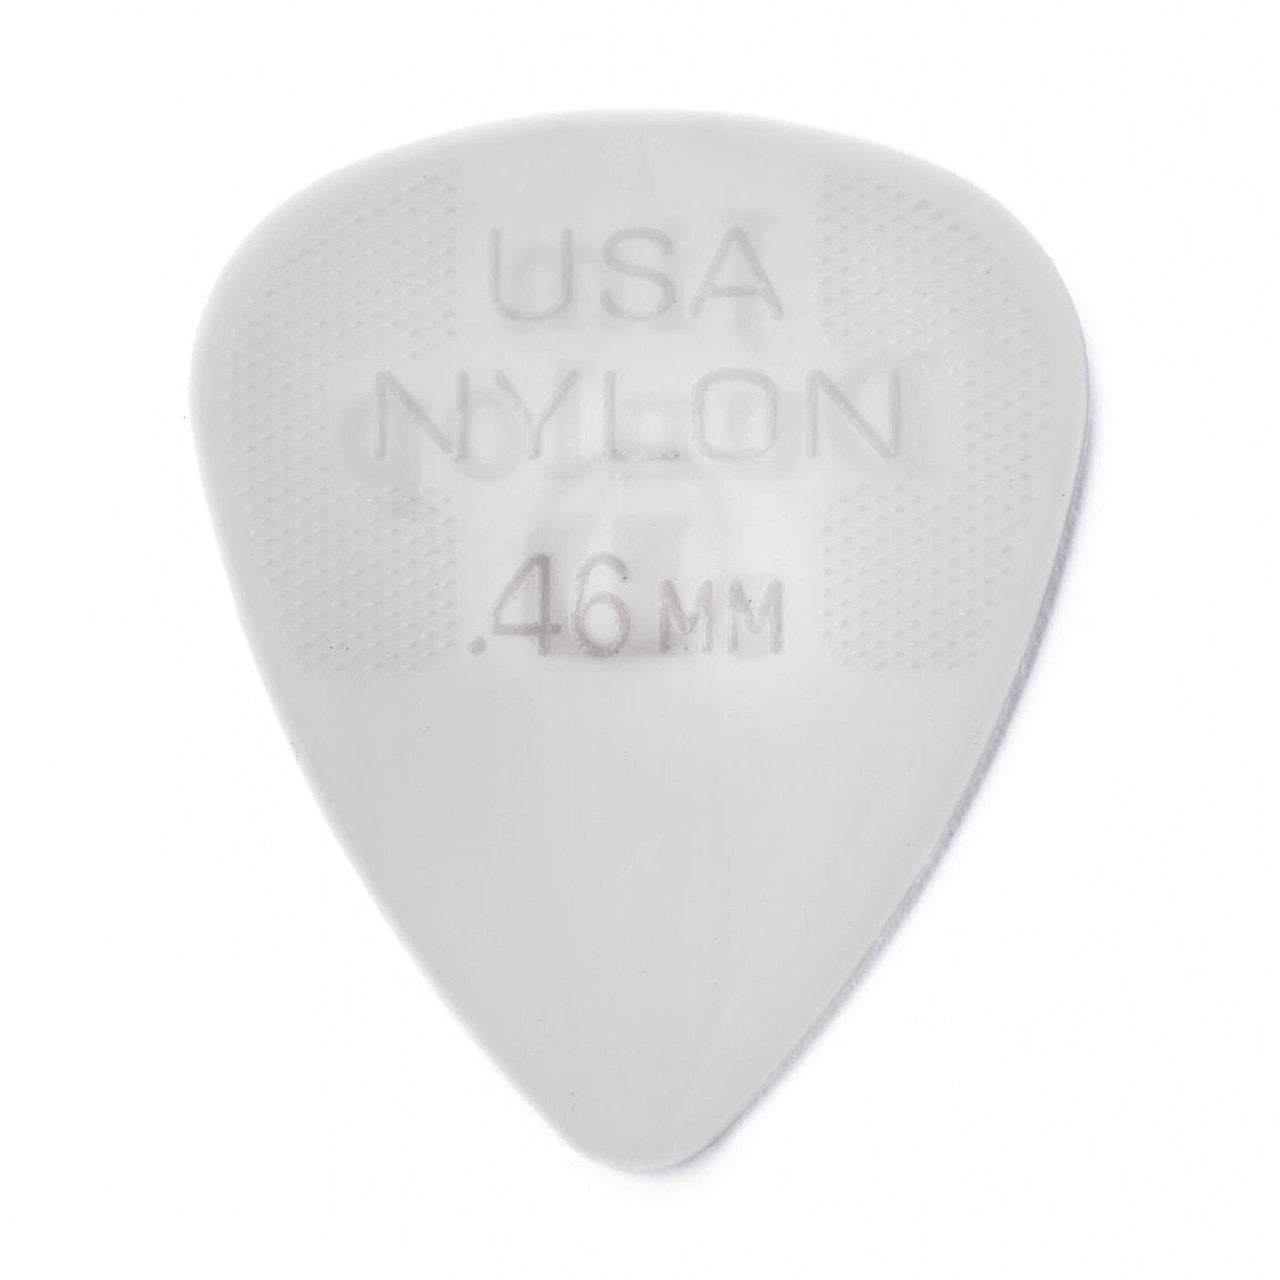 Dunlop Nylon Standard Picks, 12-Pack, 0.46mm